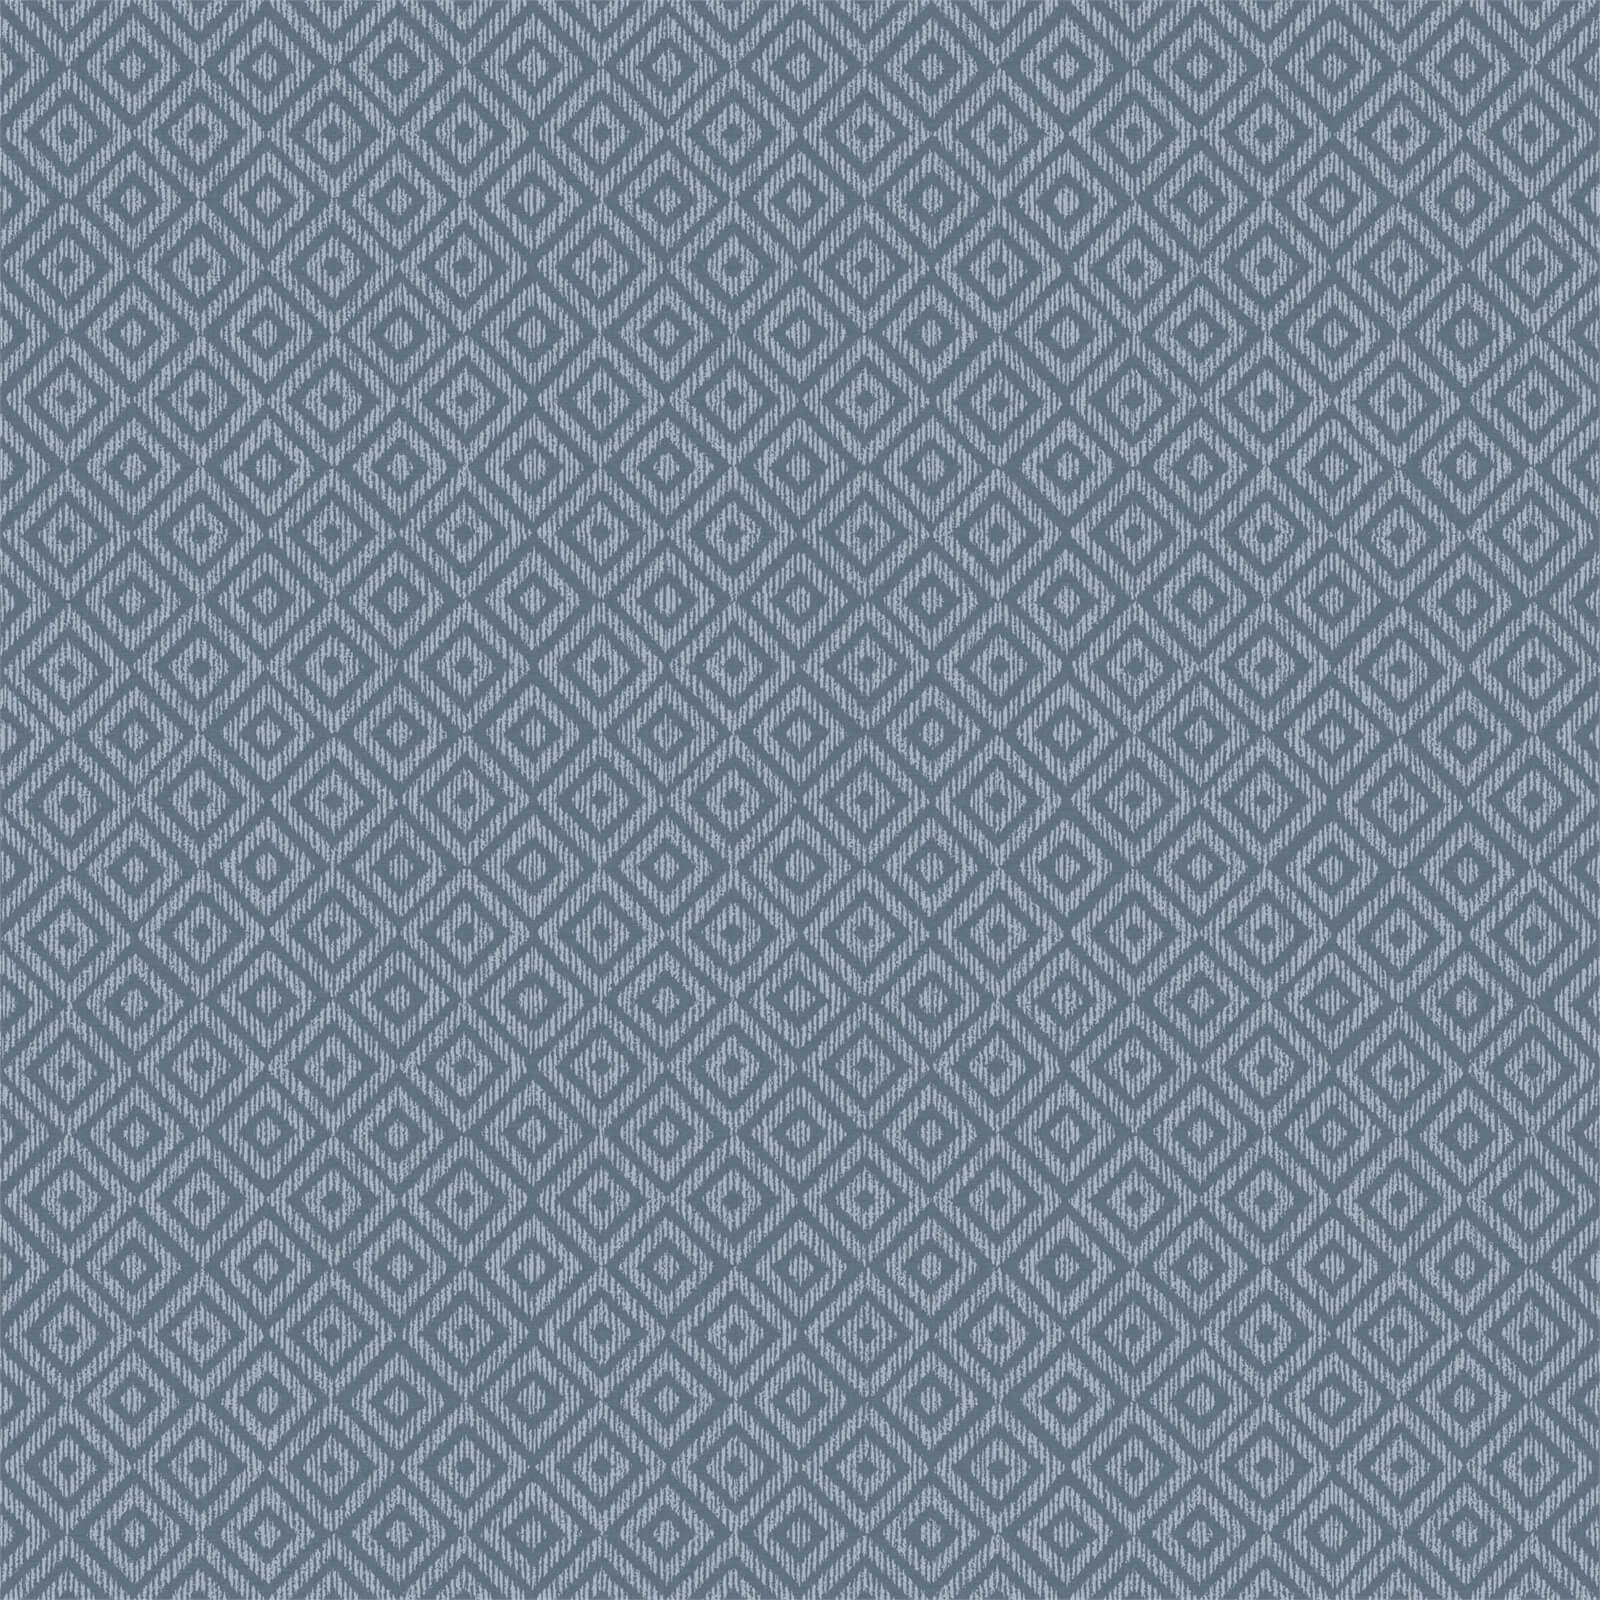 Holden Decor Riviera Diamond Geometric Textured Metallic Navy Wallpaper